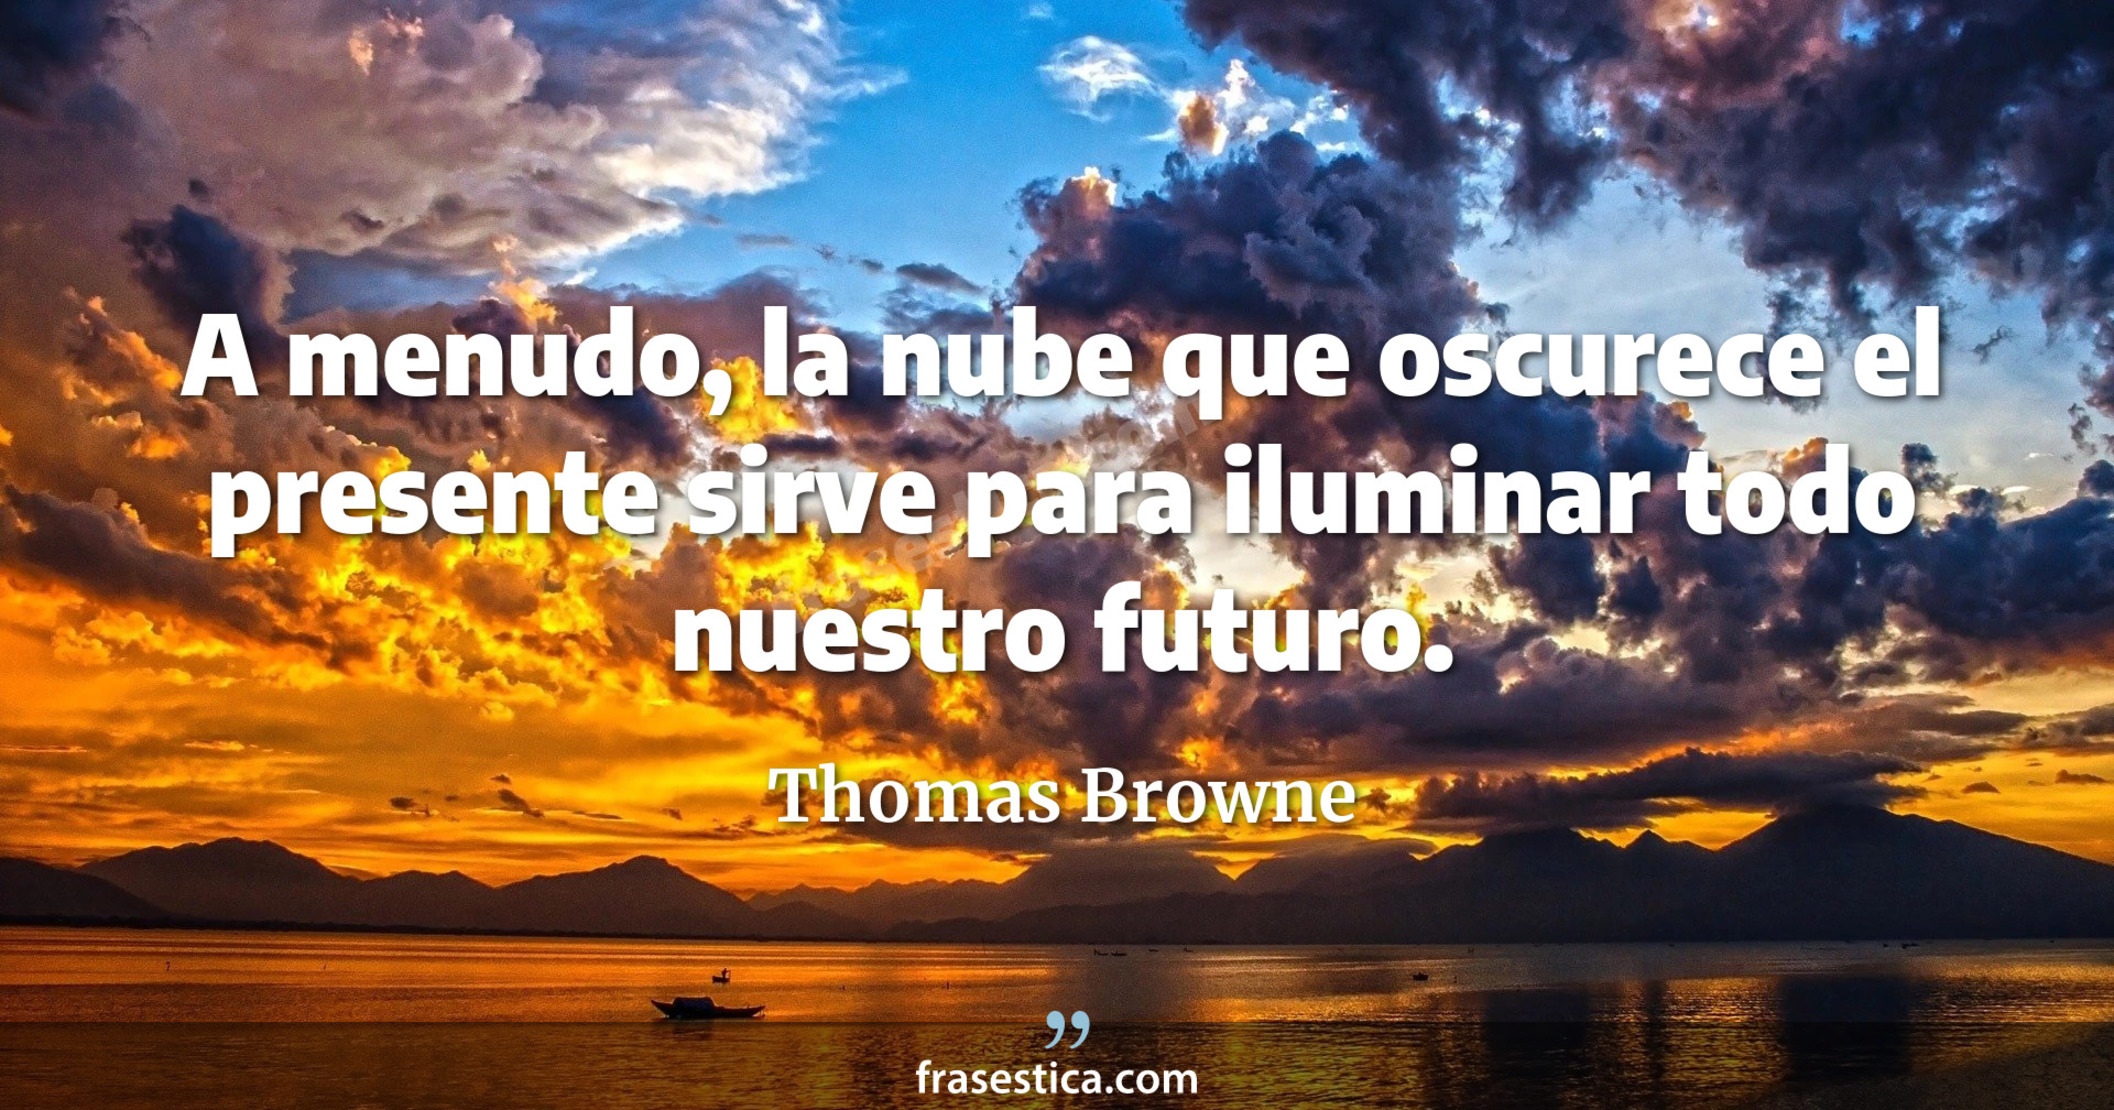 A menudo, la nube que oscurece el presente sirve para iluminar todo nuestro futuro. - Thomas Browne